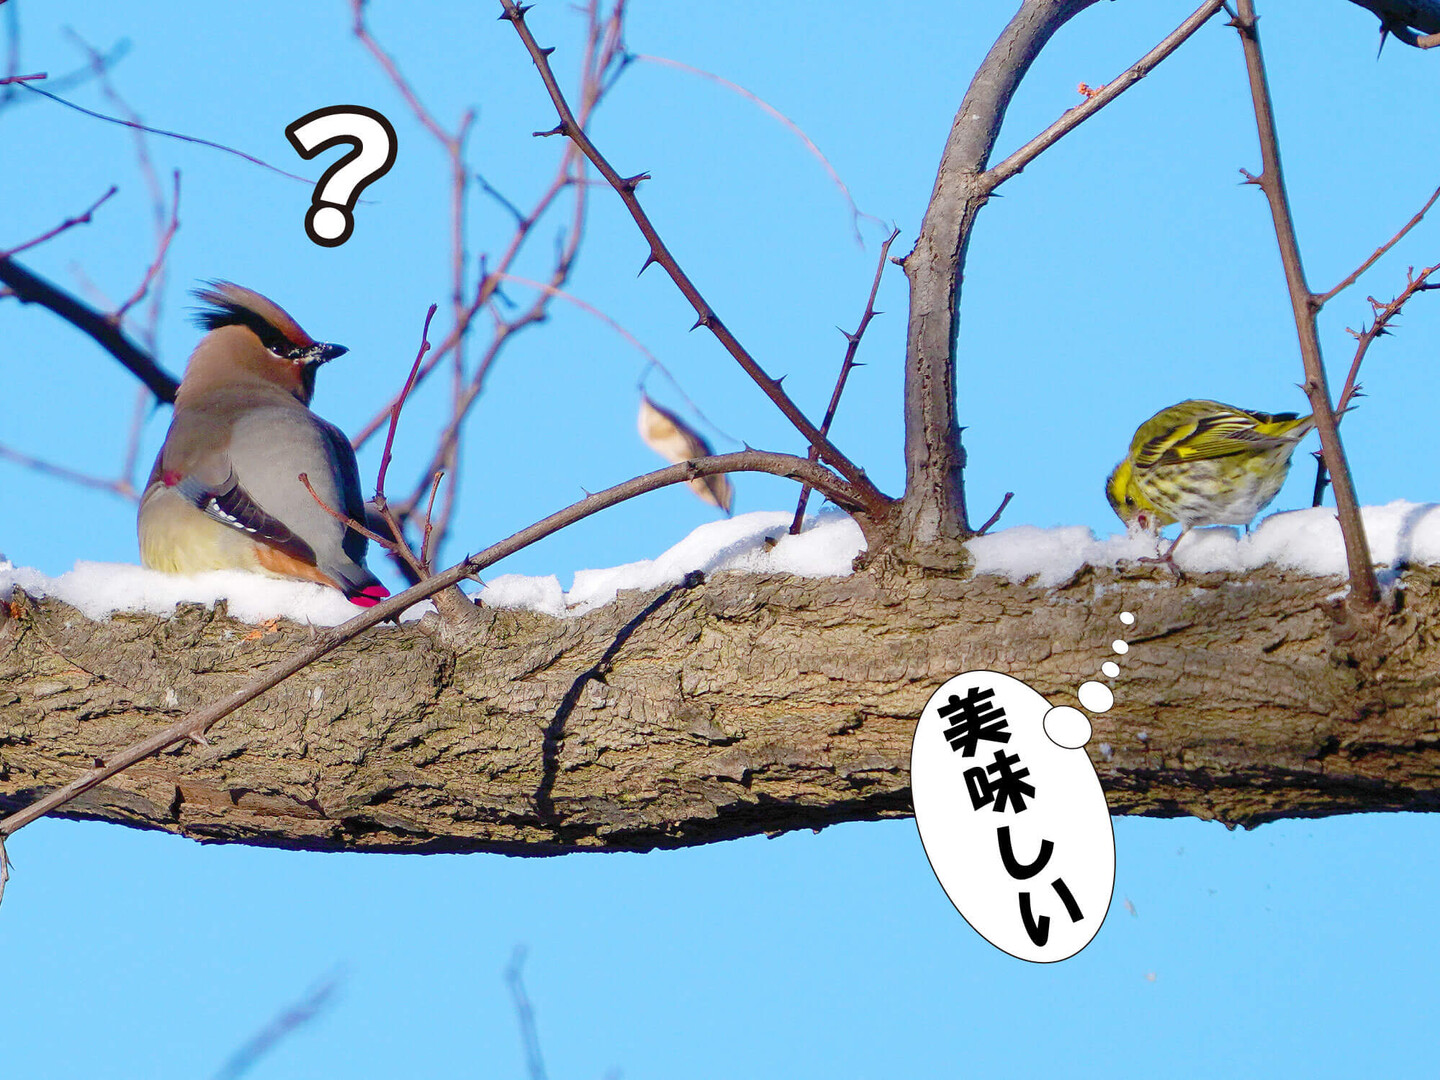 冬の野鳥たち 北海道 登場する野鳥など Sammyさんのモーメント Yamap ヤマップ